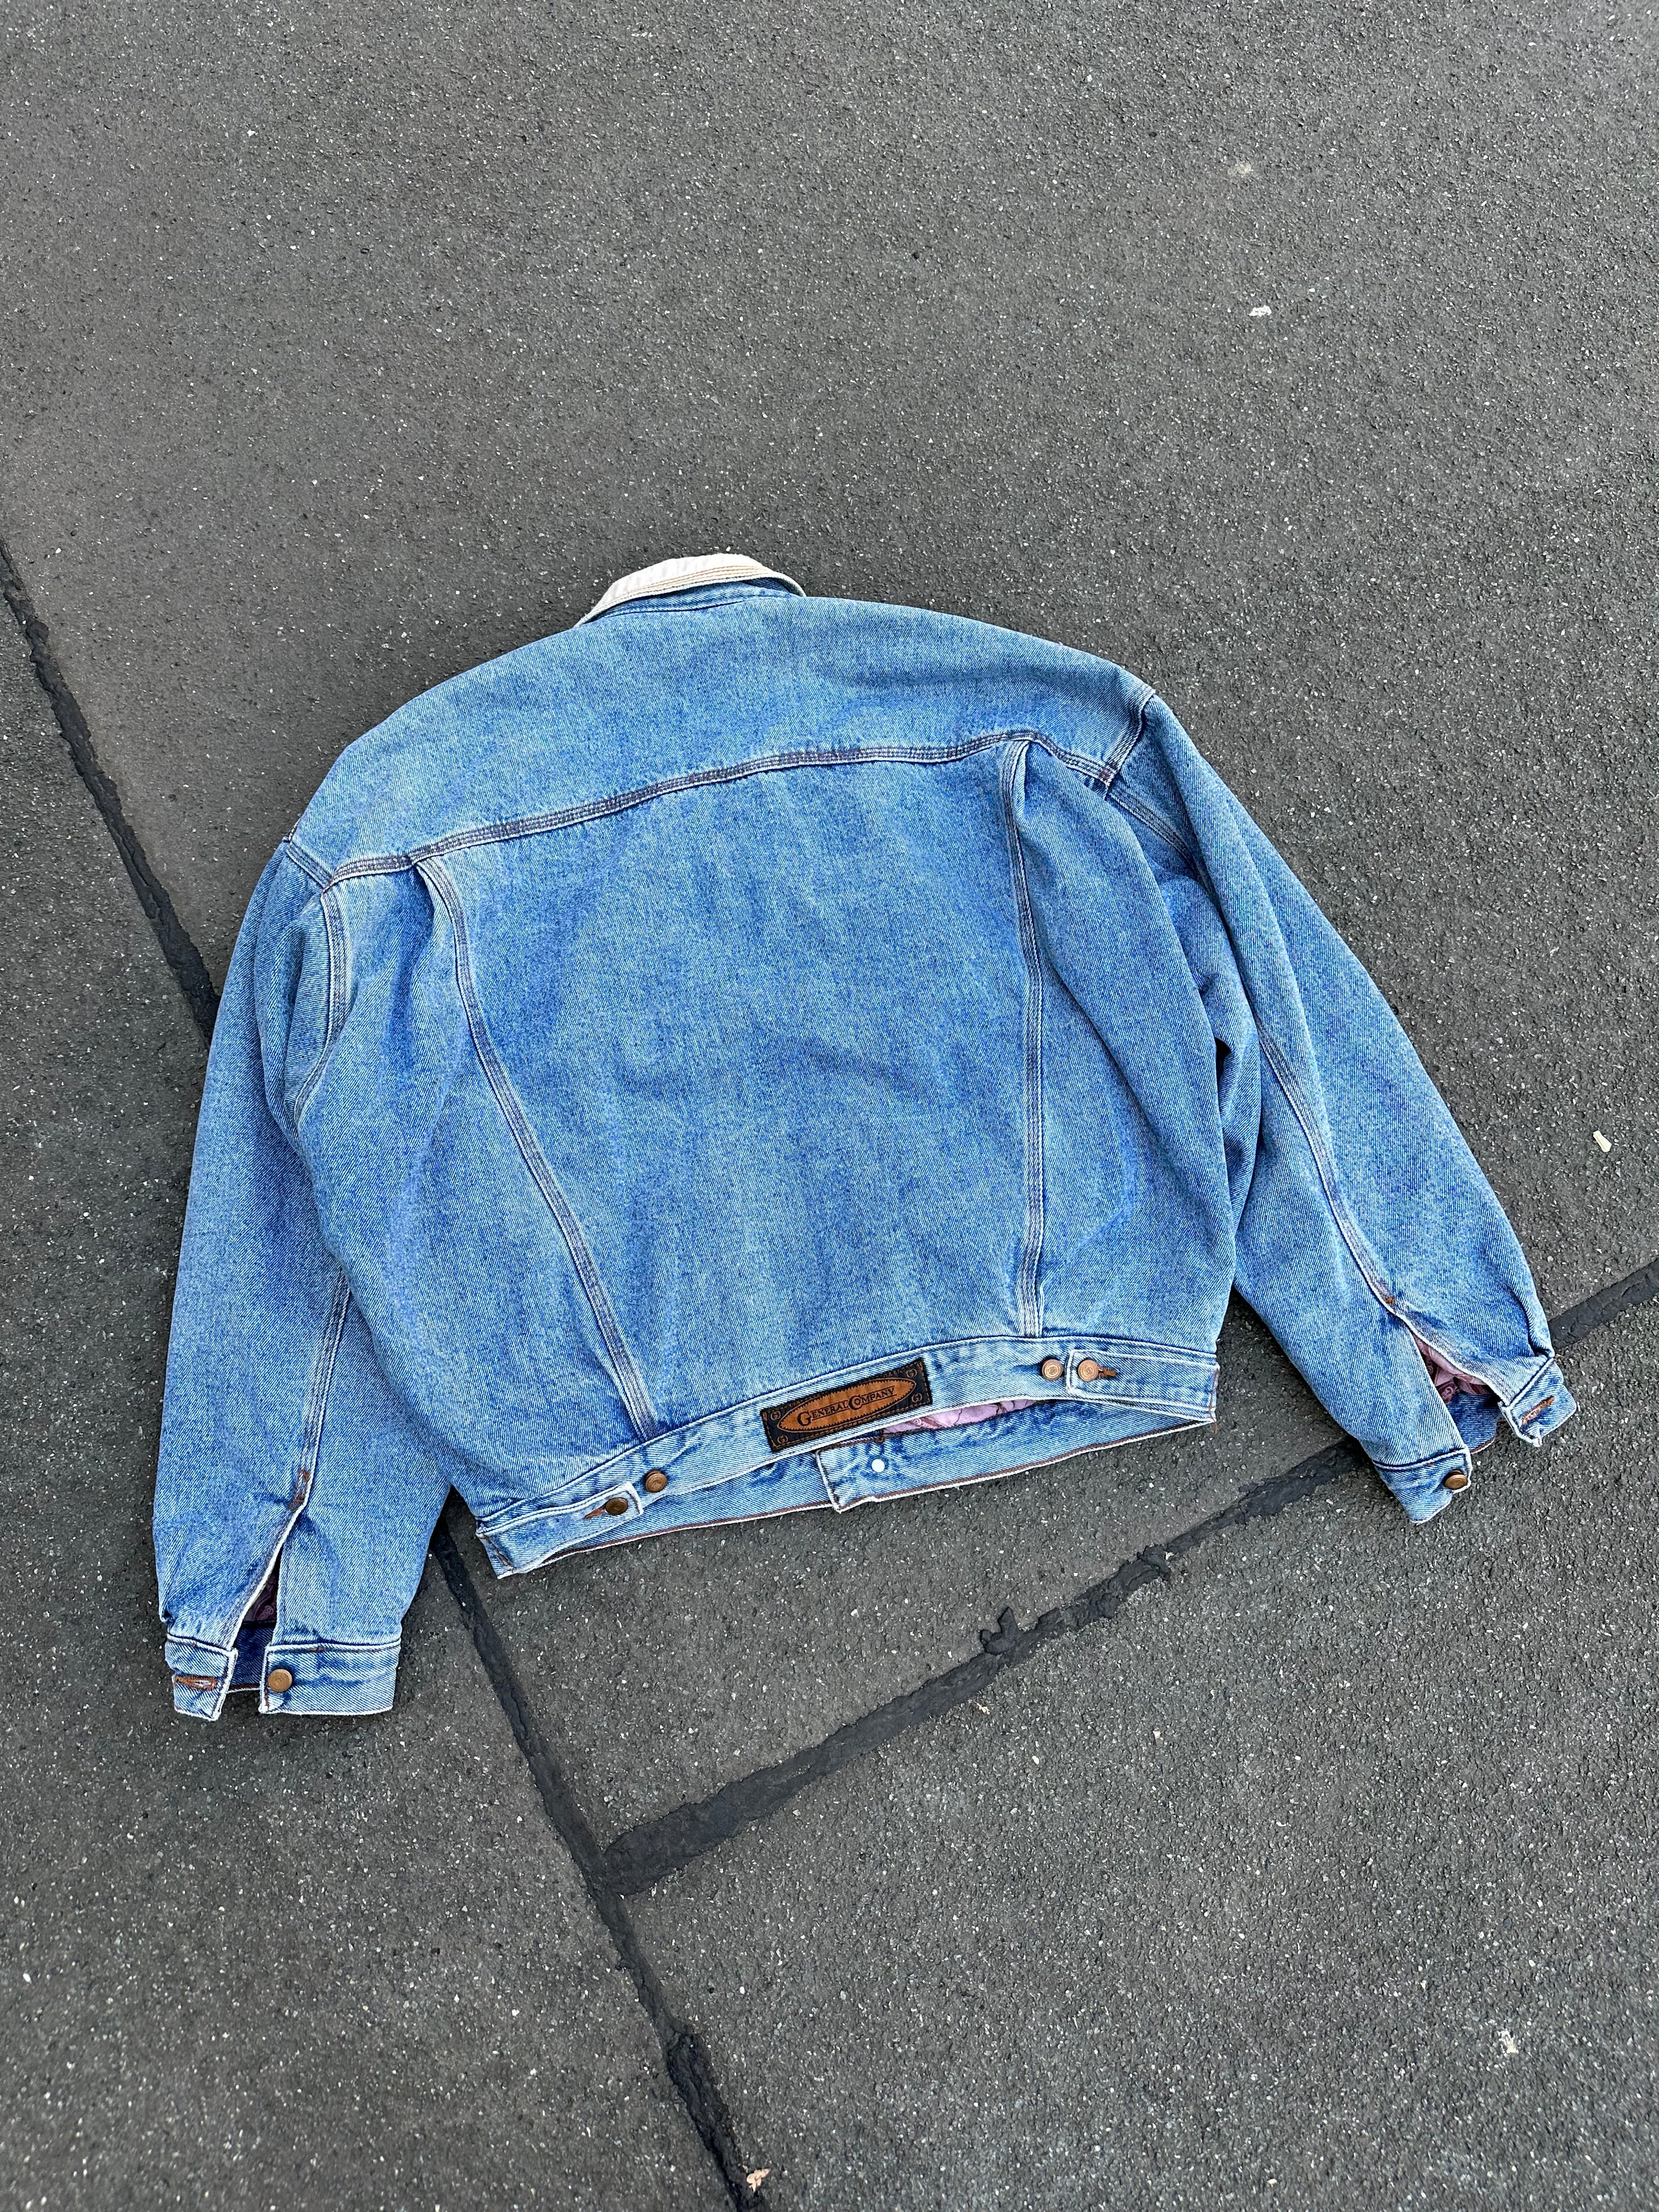 Vintage Denim Jacket (L)